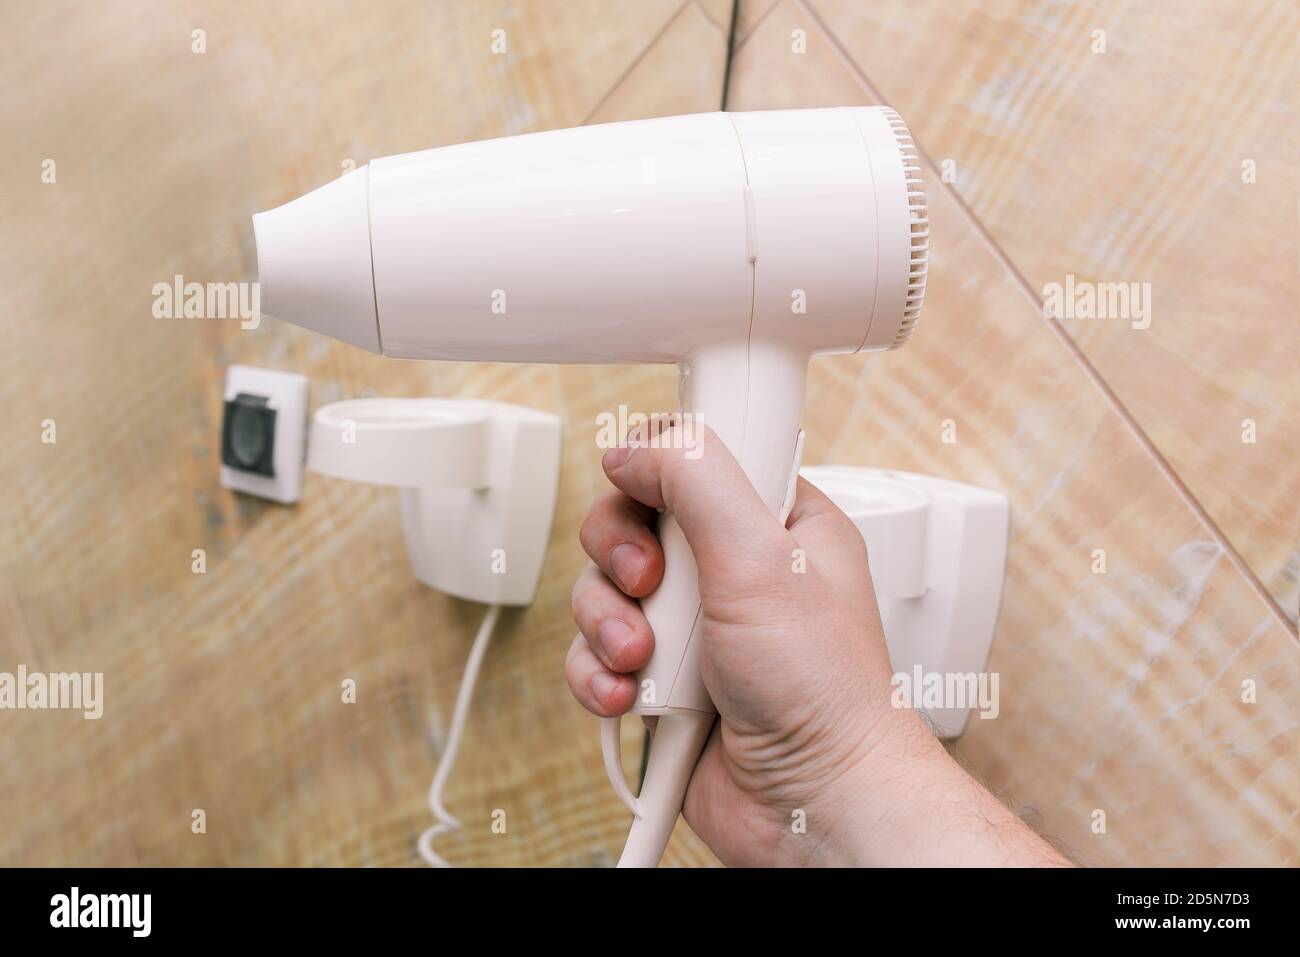 Sèche-cheveux blanc en gros plan. Un homme tient un sèche-linge en plastique dans sa main contre un fond de miroirs et de carreaux de marbre. Intérieur d'une salle de bains, beauté Banque D'Images